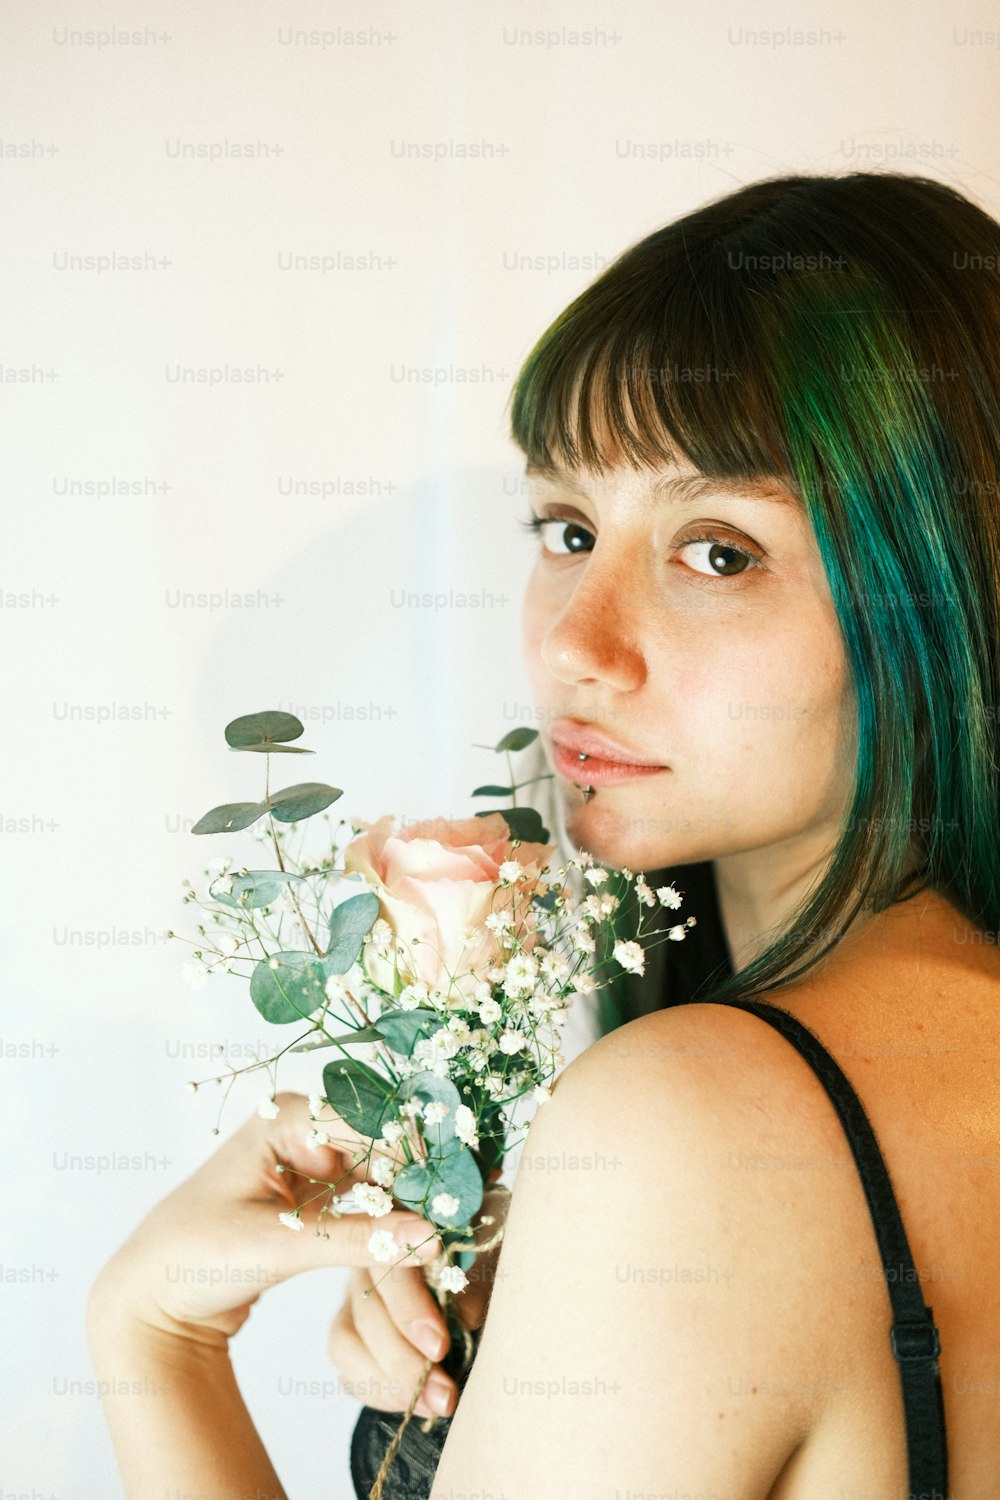 Eine Frau mit grünen Haaren hält einen Blumenstrauß